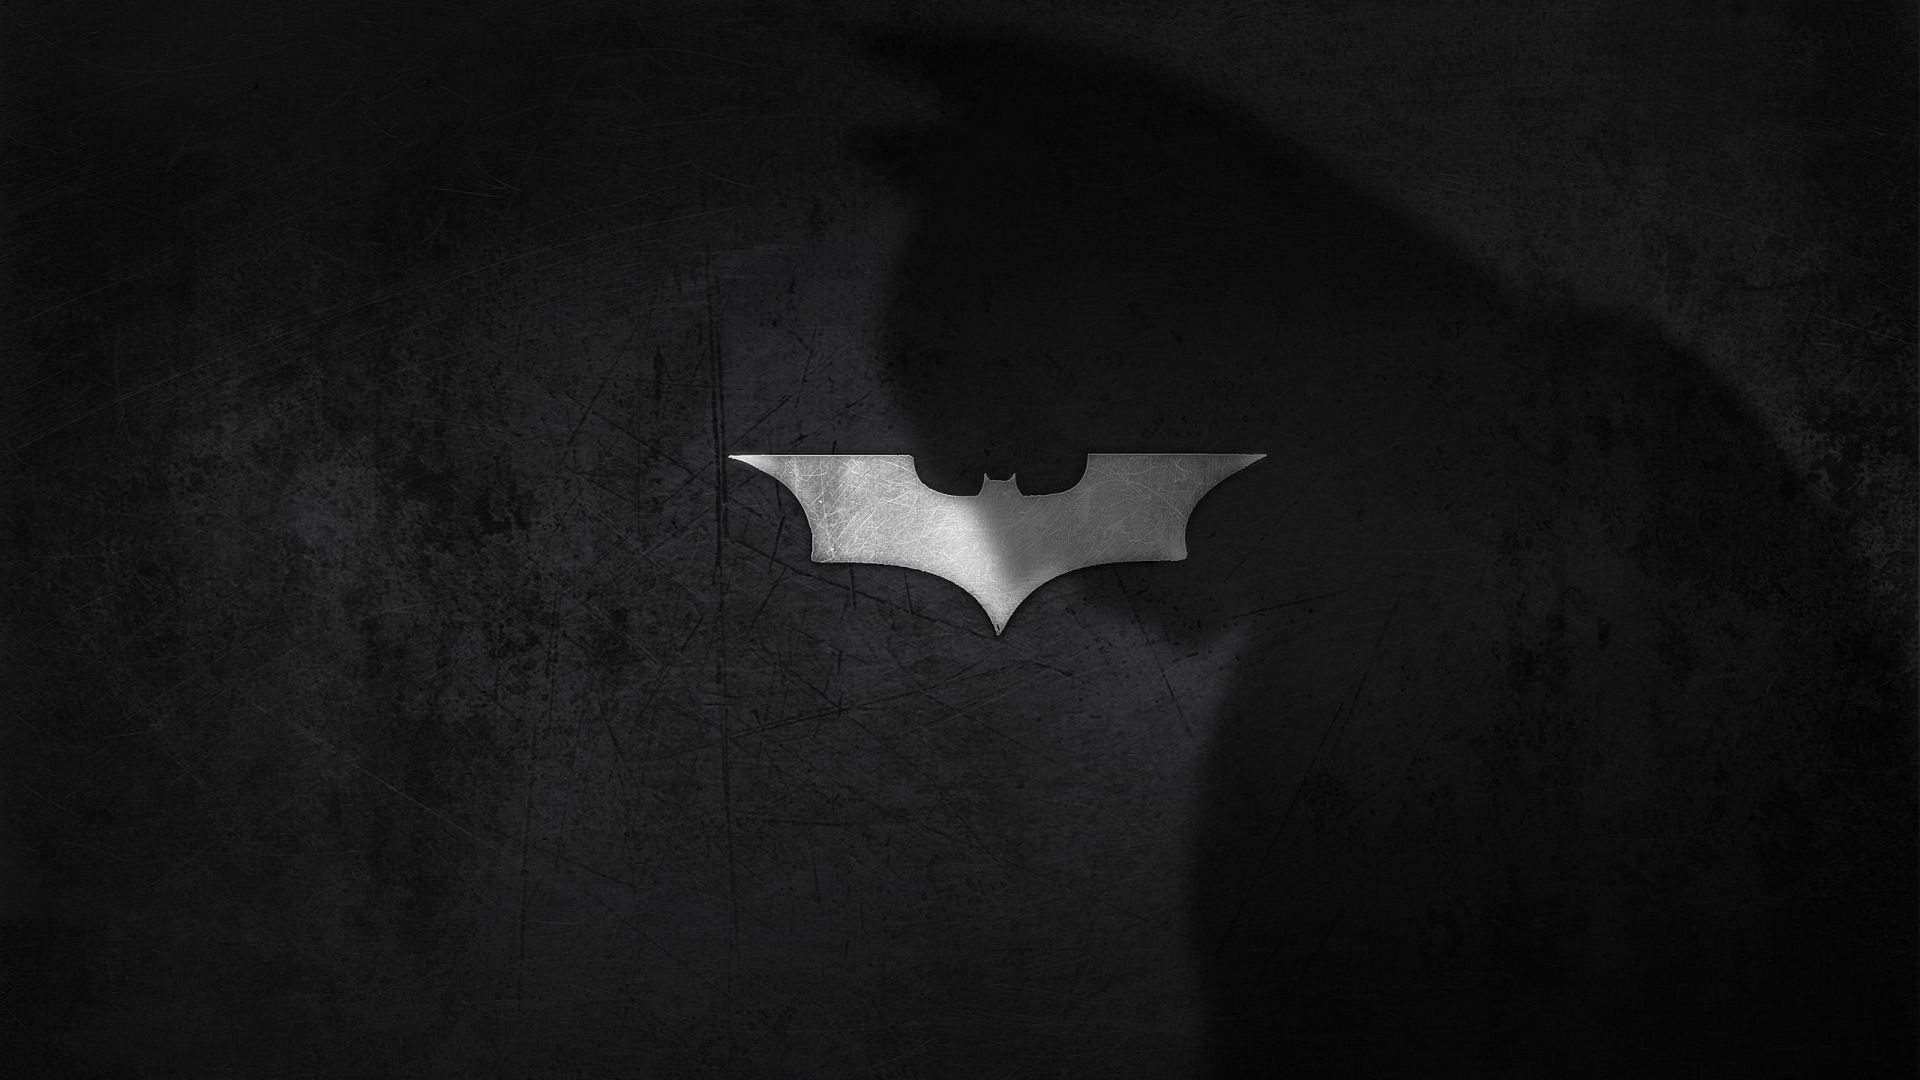 Batman Logo Wallpaper. Free Vector Graphic, Design Elements